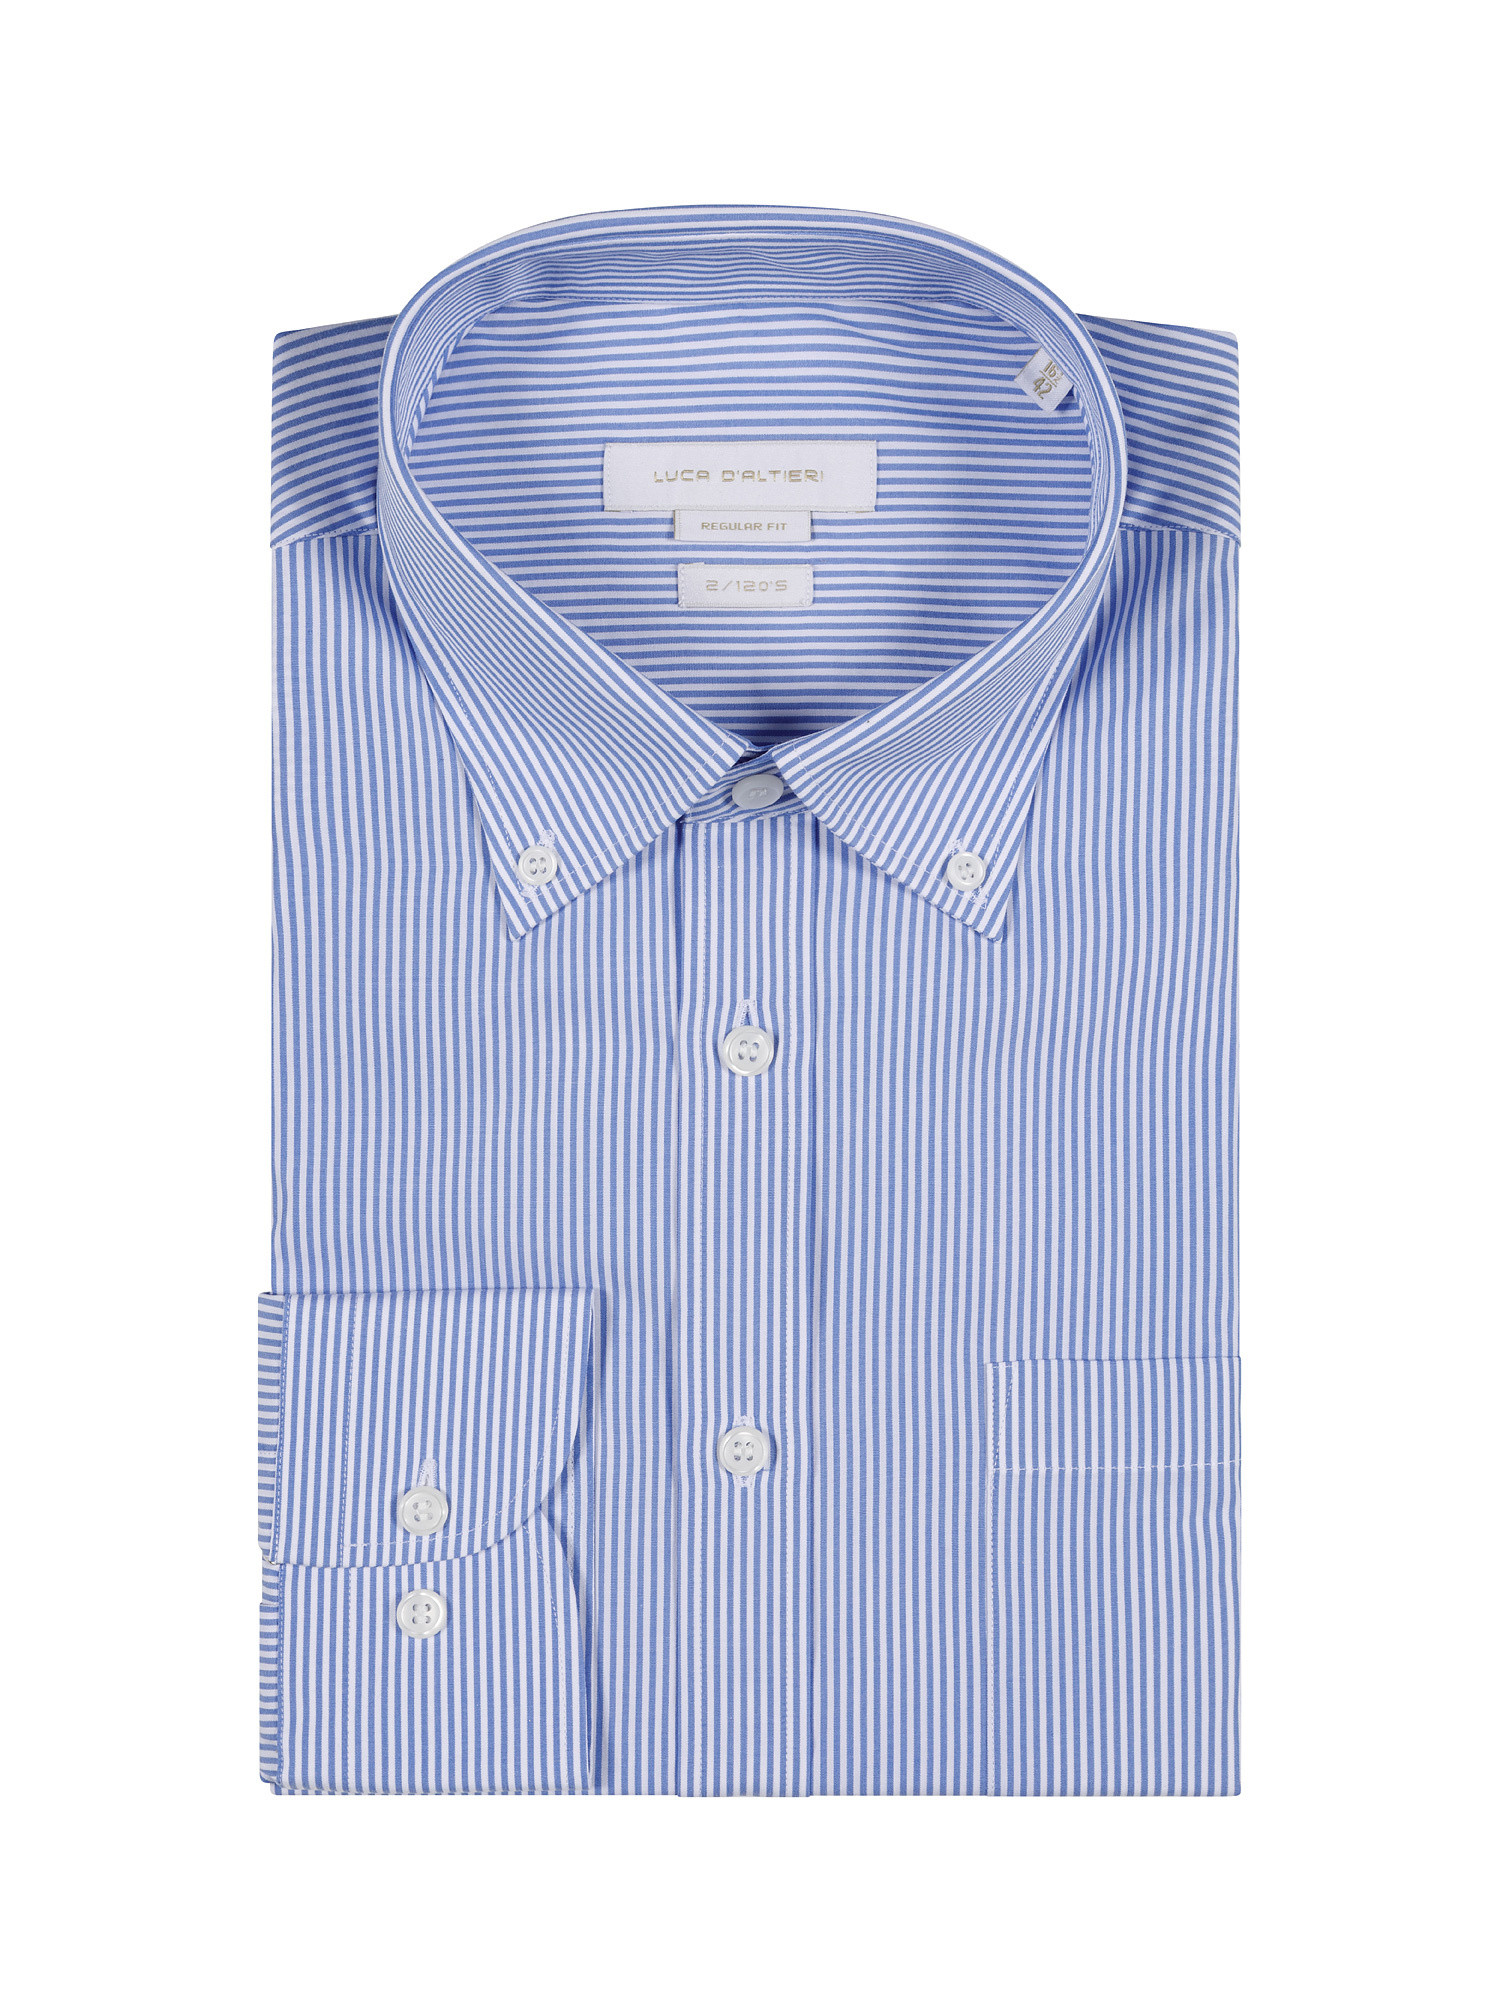 Regular fit cotton poplin shirt, Light Blue, large image number 2